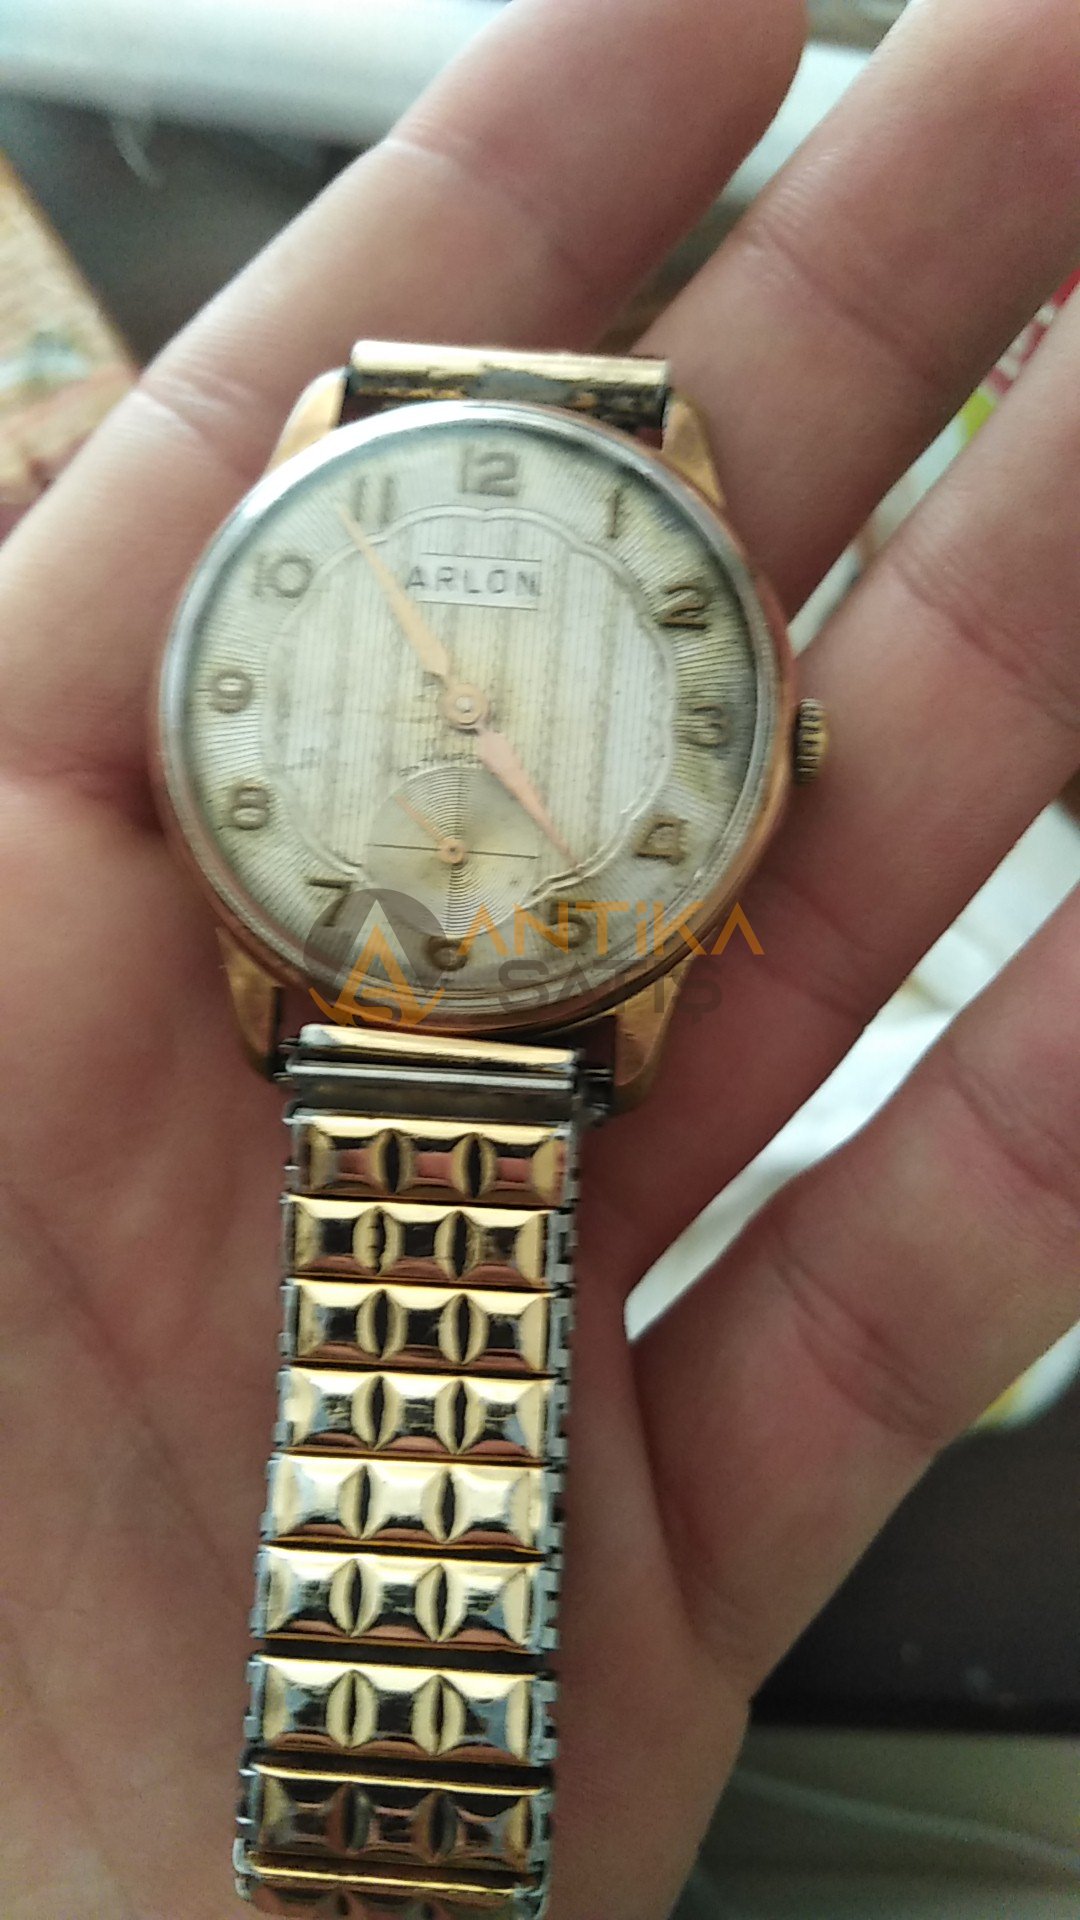 Arlon marka kurmalı antika kol saati